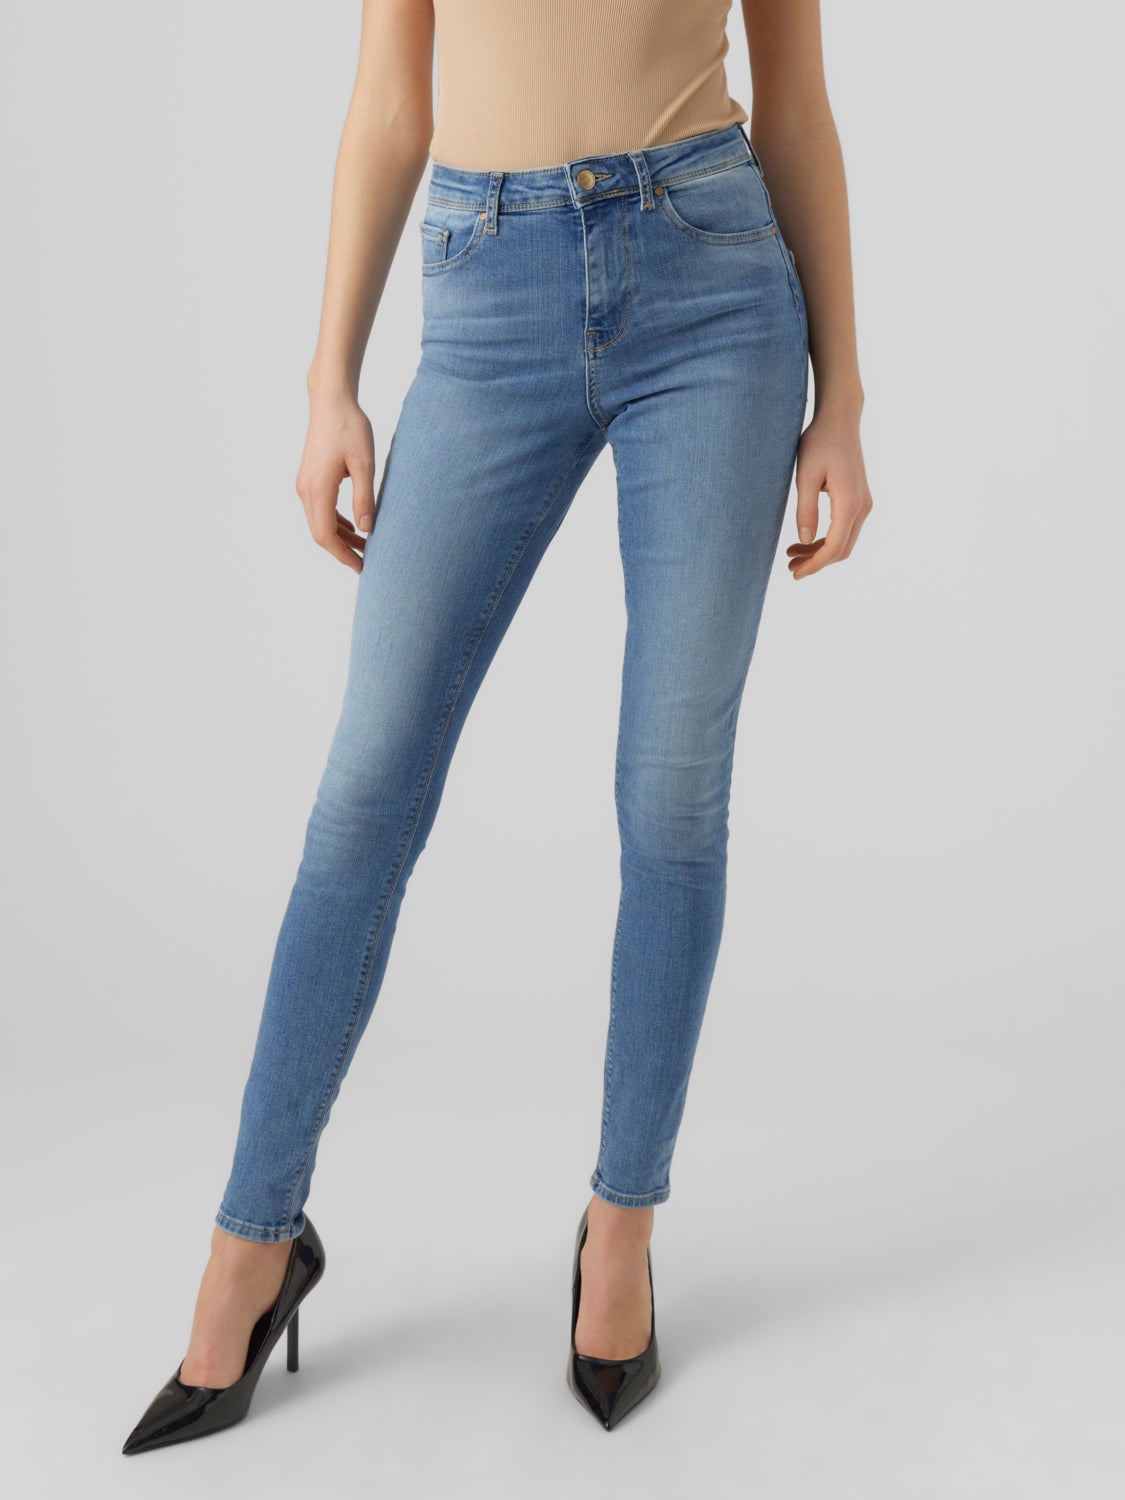 with 40% discount! VMSOPHIA | Vero Moda® Jeans